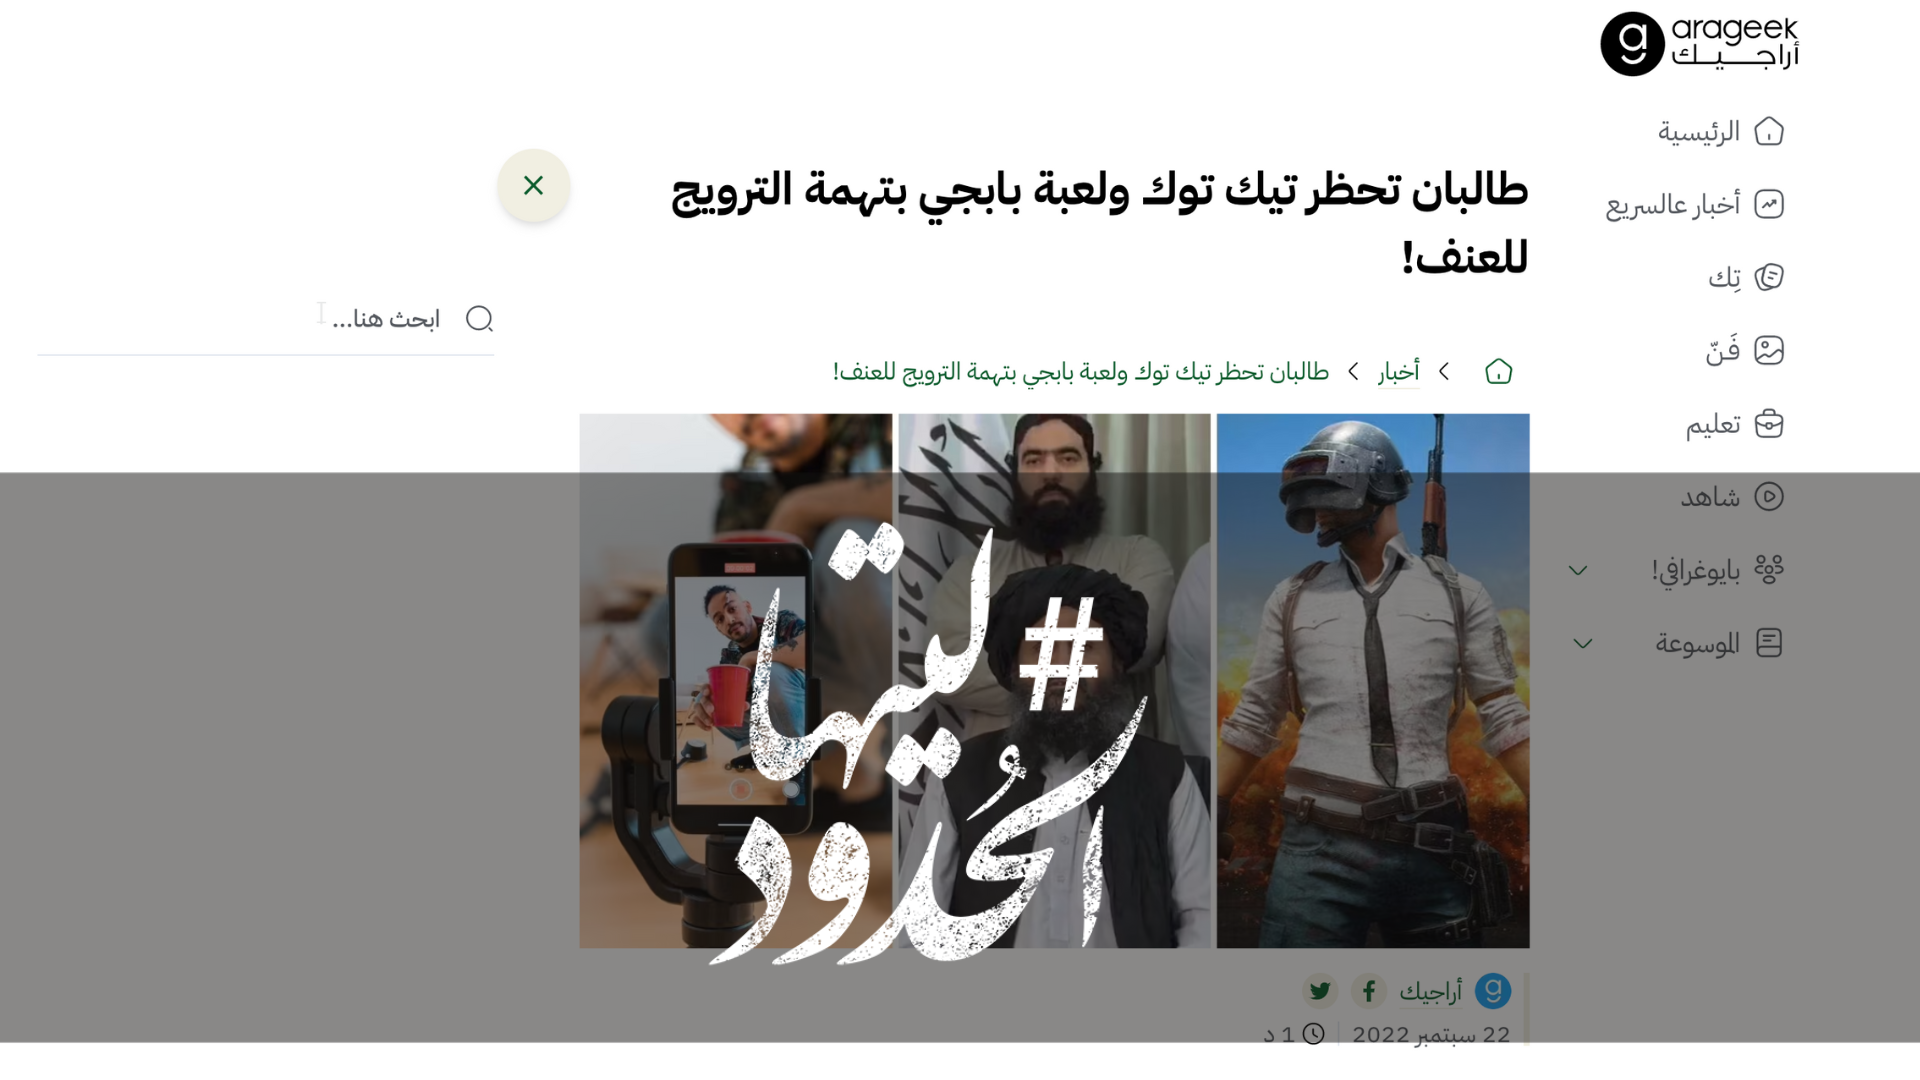 صورة طالبان تحظر تيك توك ولعبة بابجي بتهمة الترويج للعنف!